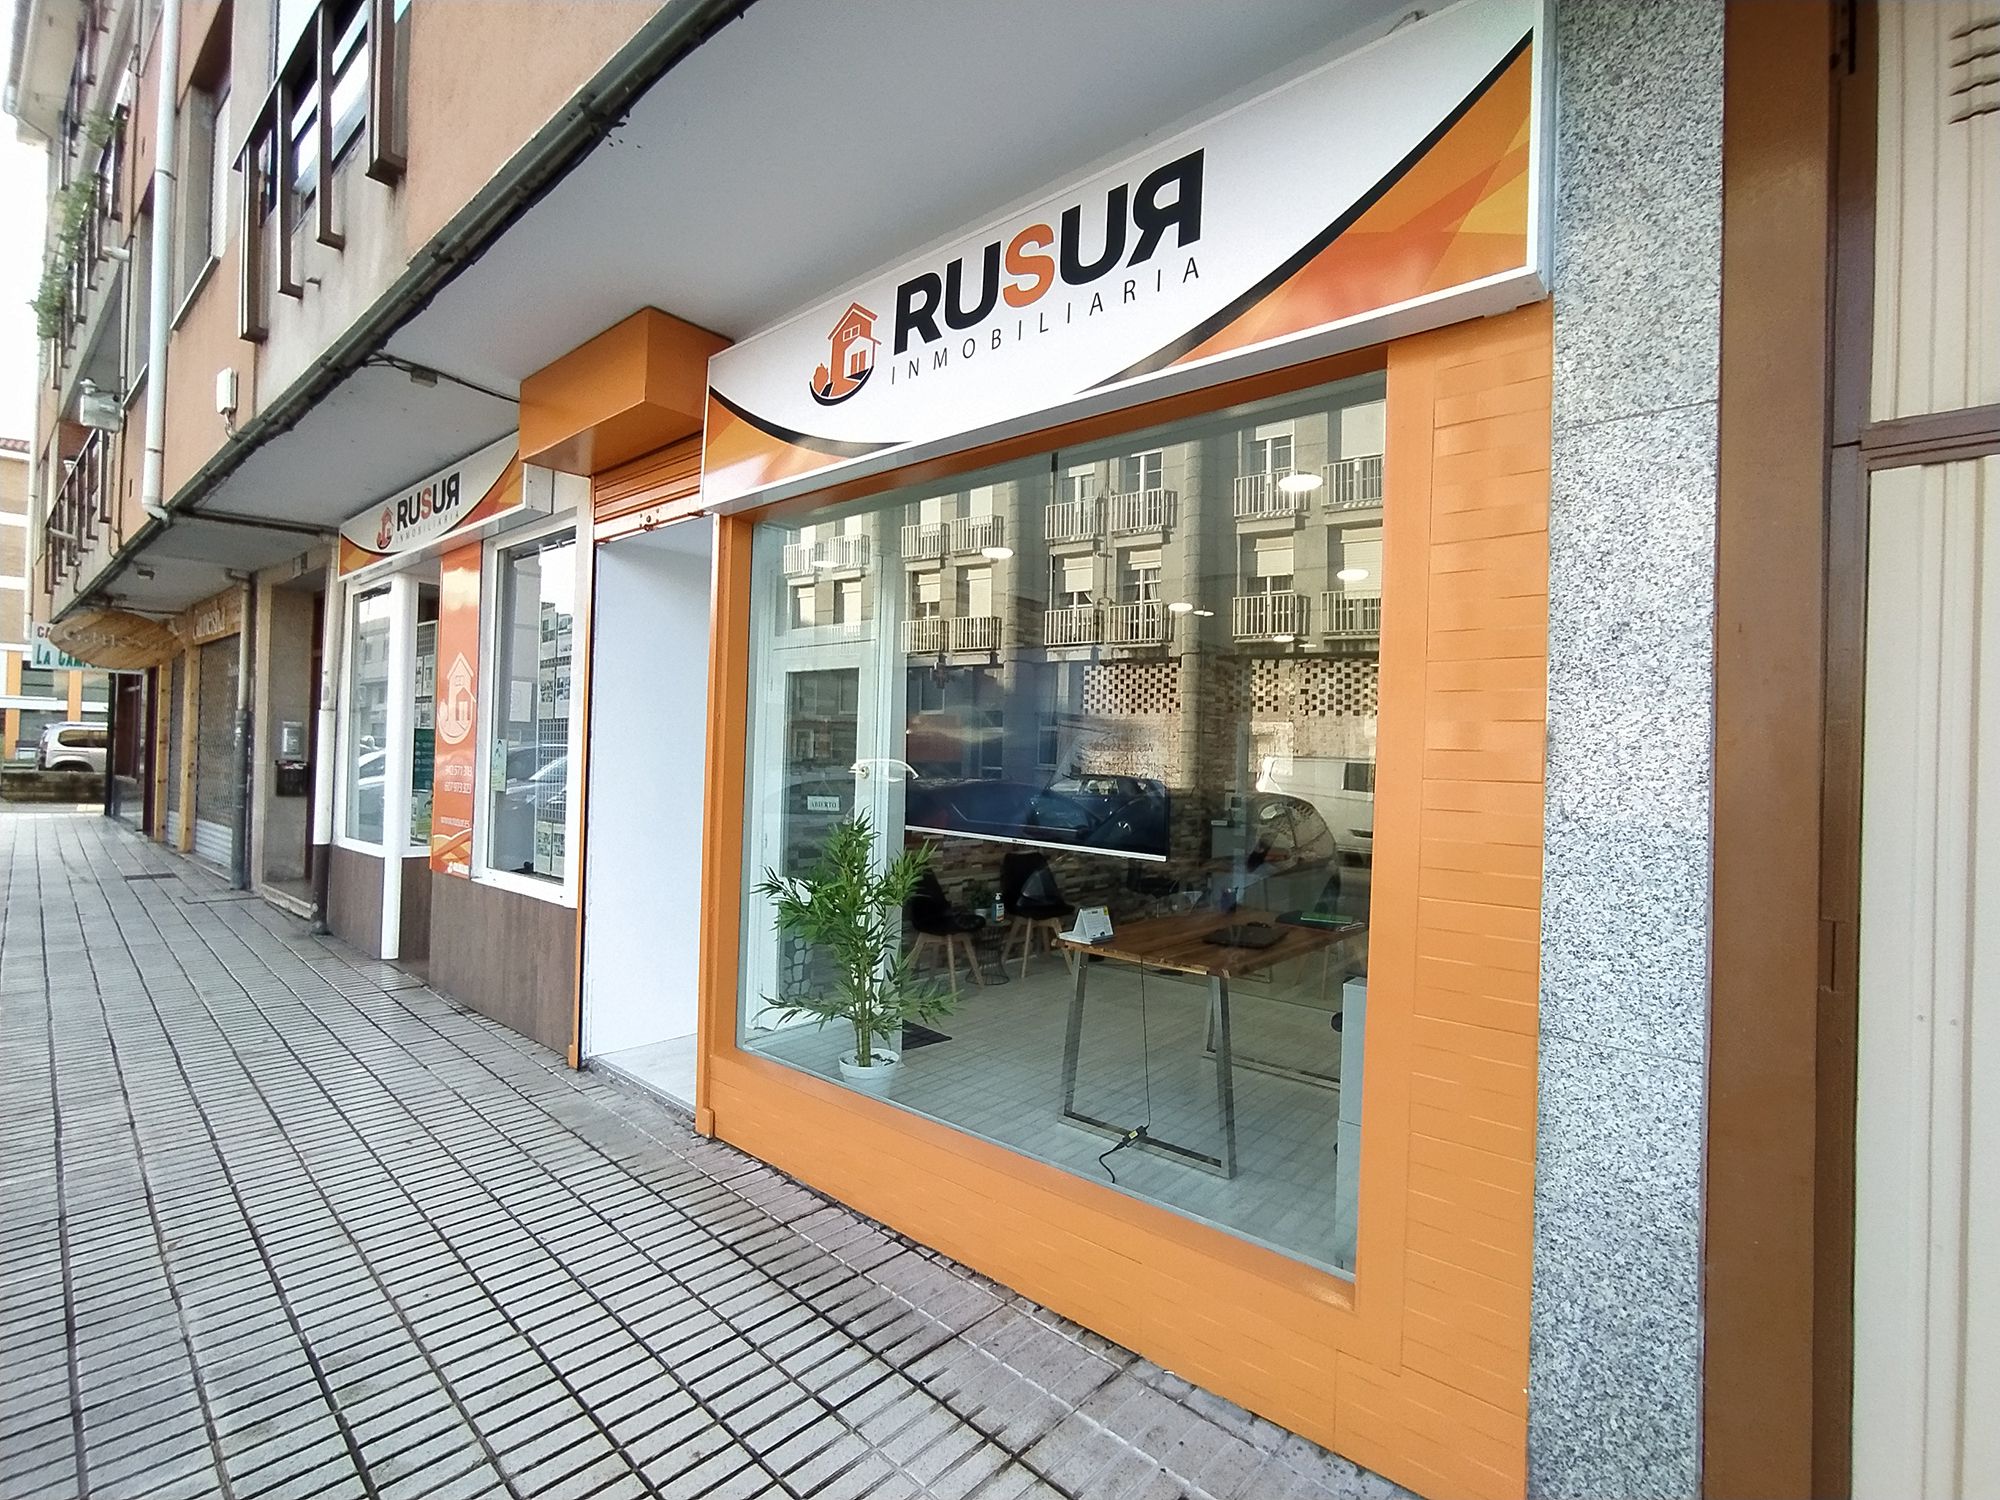 Rusur, tu inmobiliaria de confianza en Cantabria. RUSUR INMOBILIARIA en Renedo